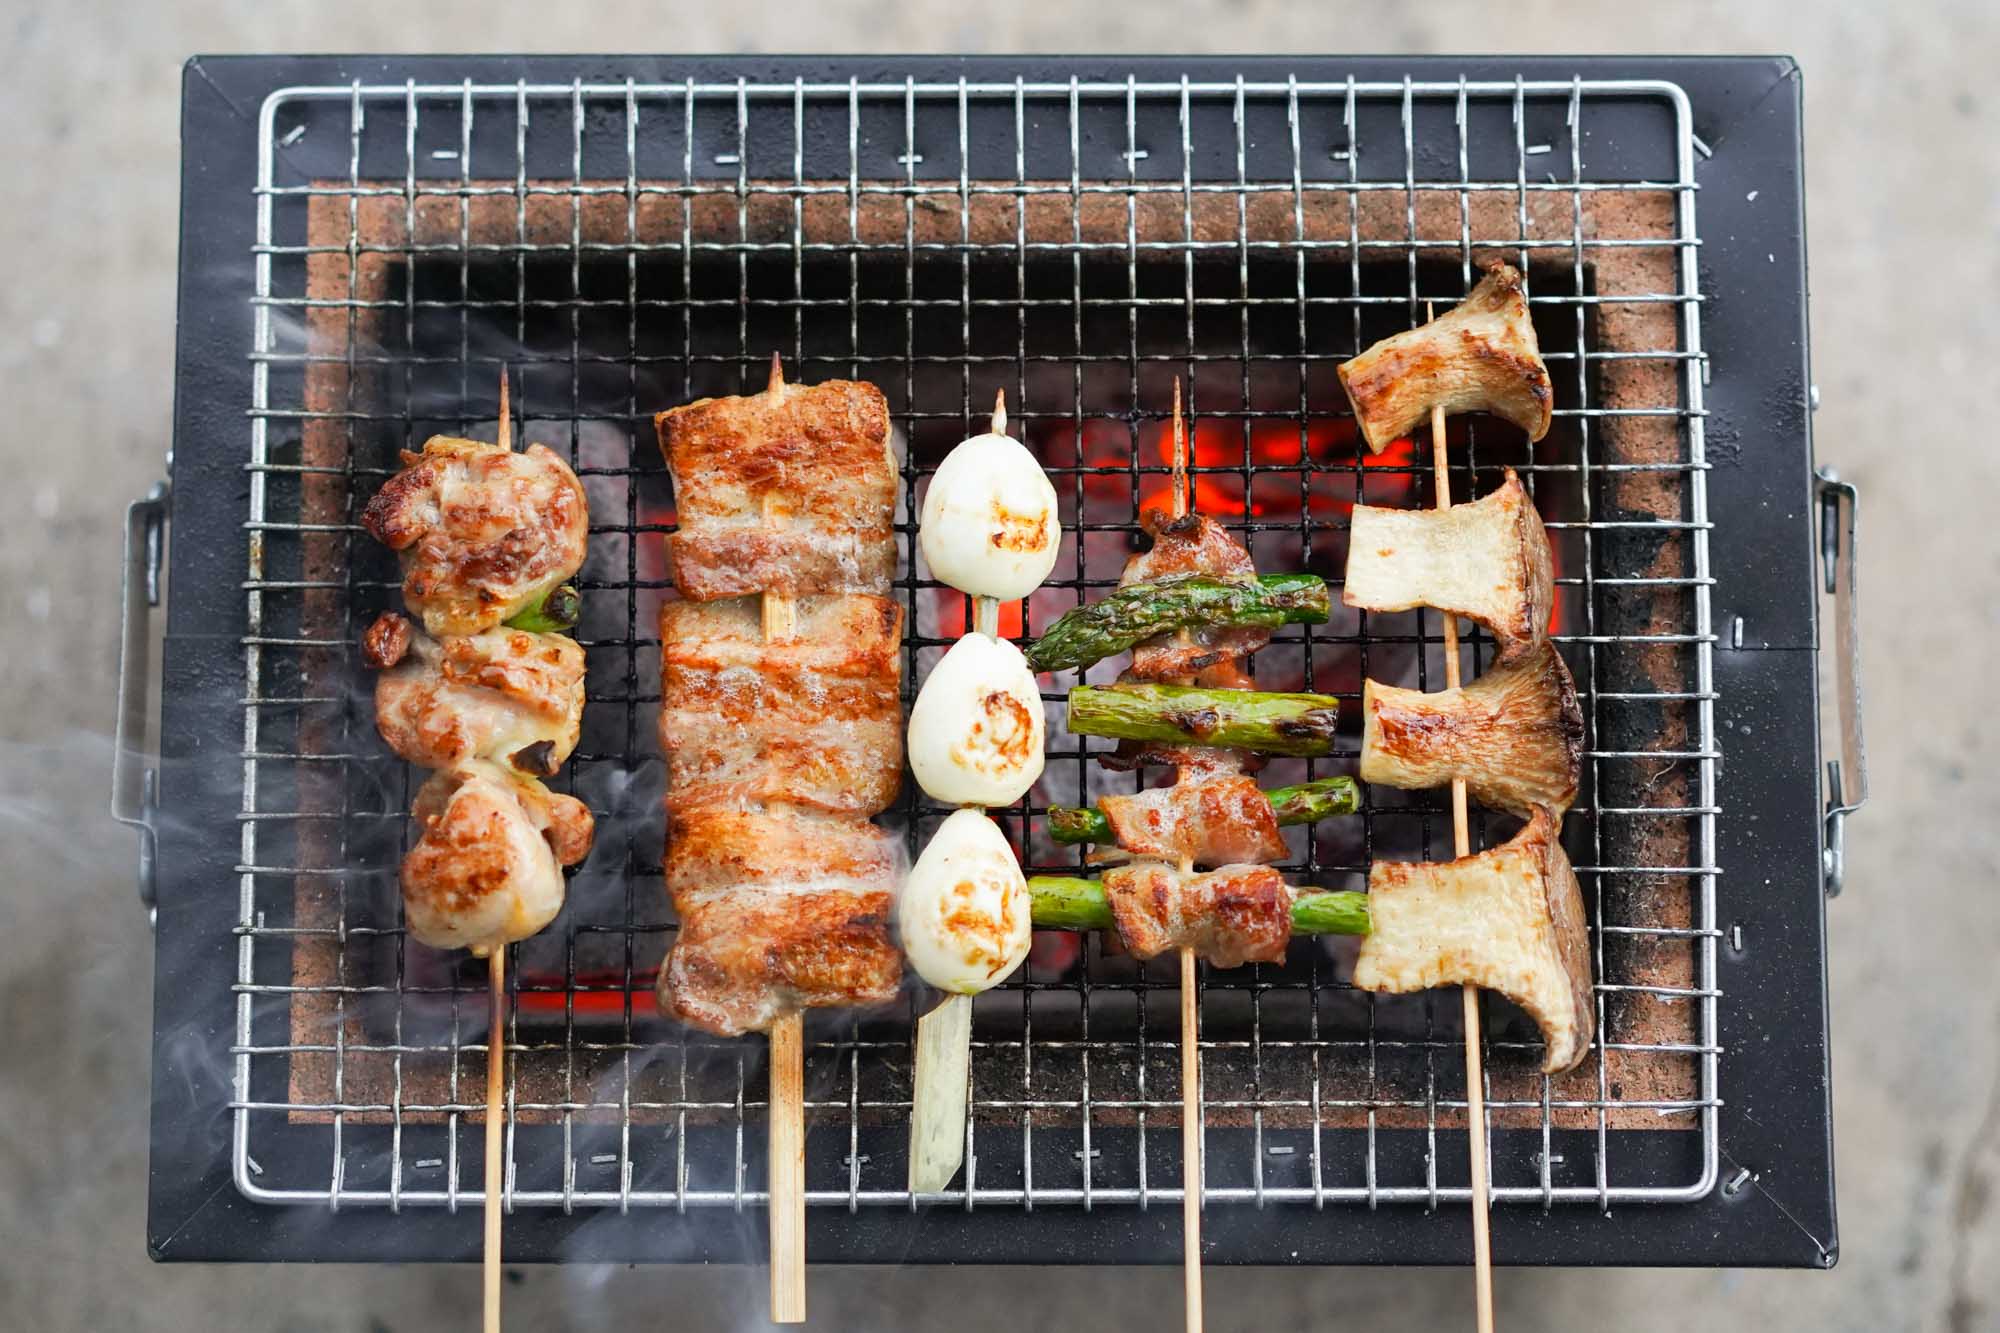 https://www.hungryhuy.com/wp-content/uploads/yakitori-skewers-konro-grill.jpg